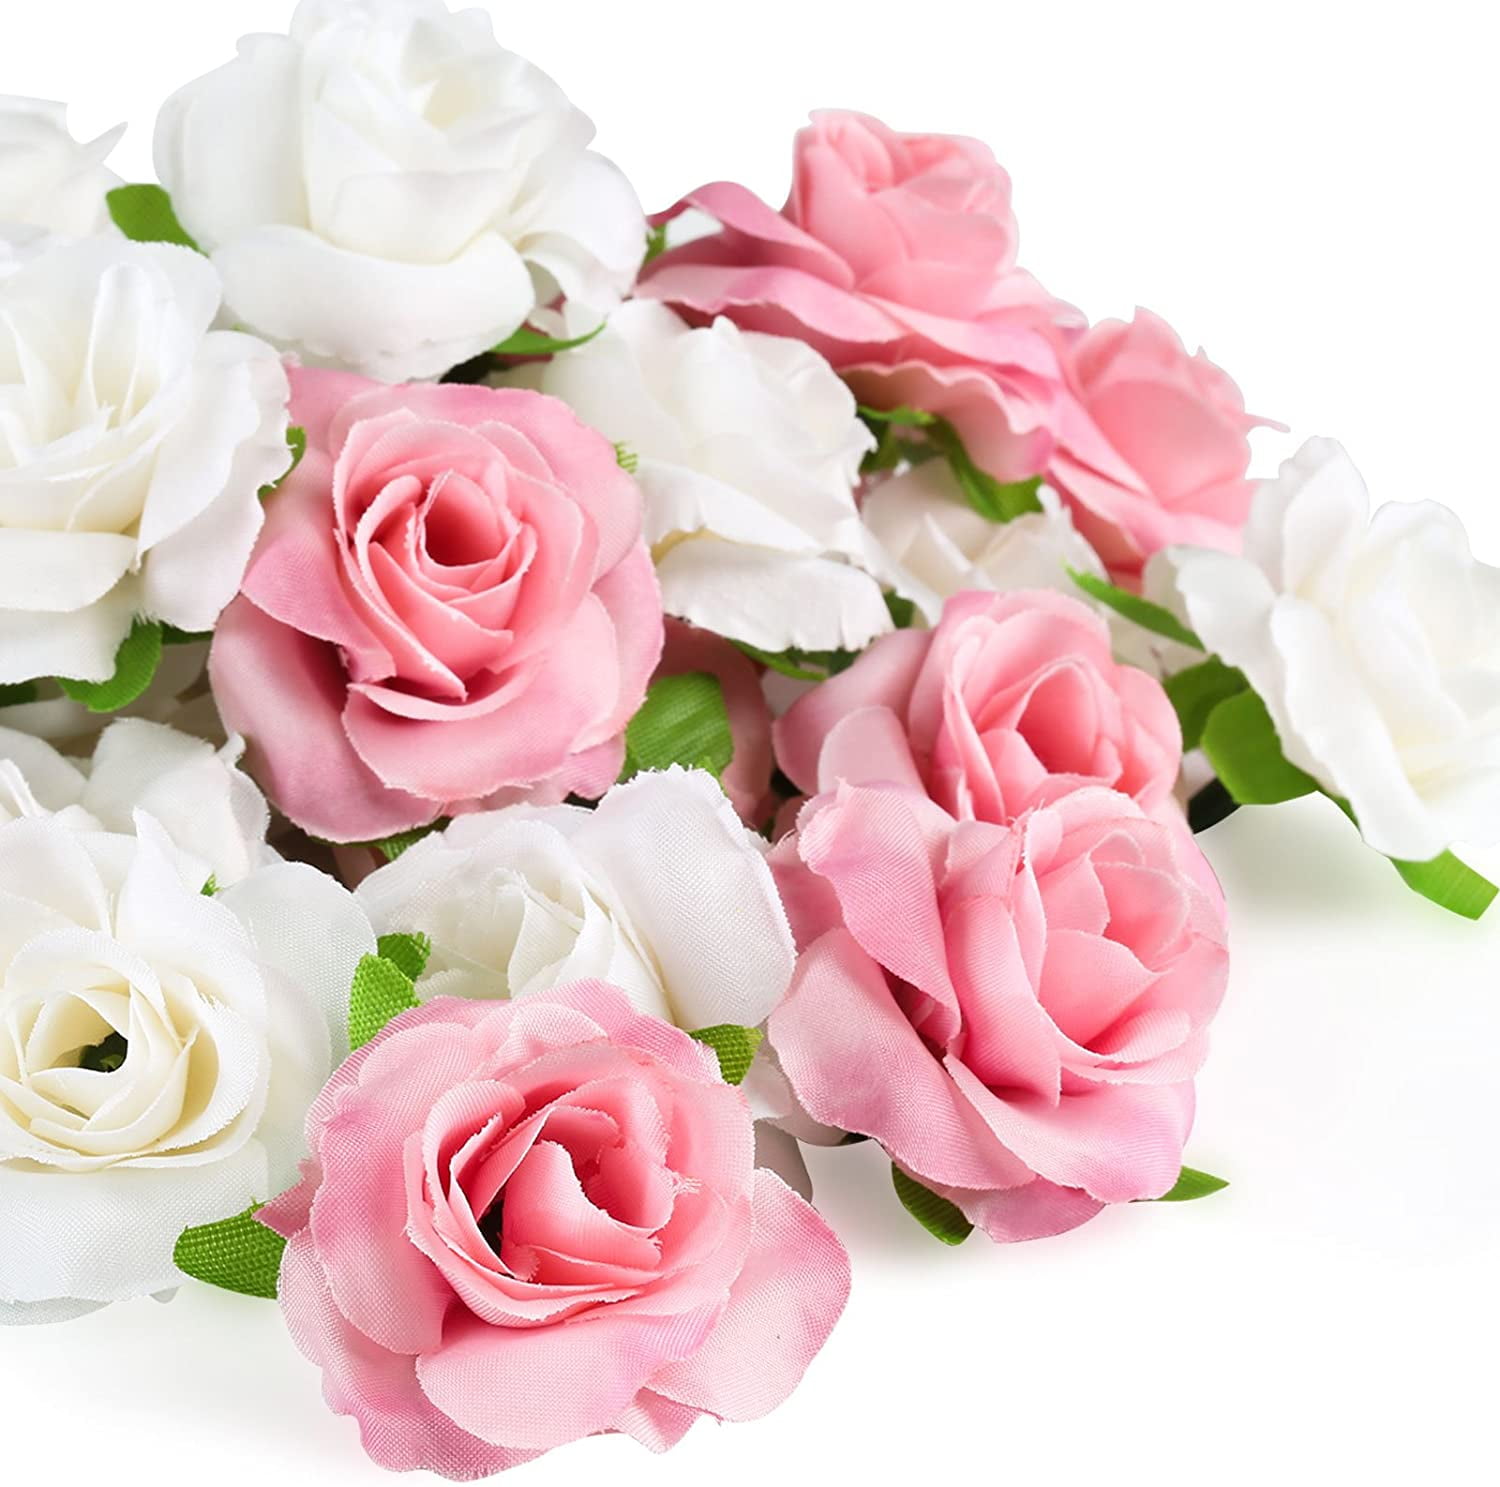 50 PCS Foam Roses Artificial Flower Wedding Bride Bouquet Party Decor DIY  JB 